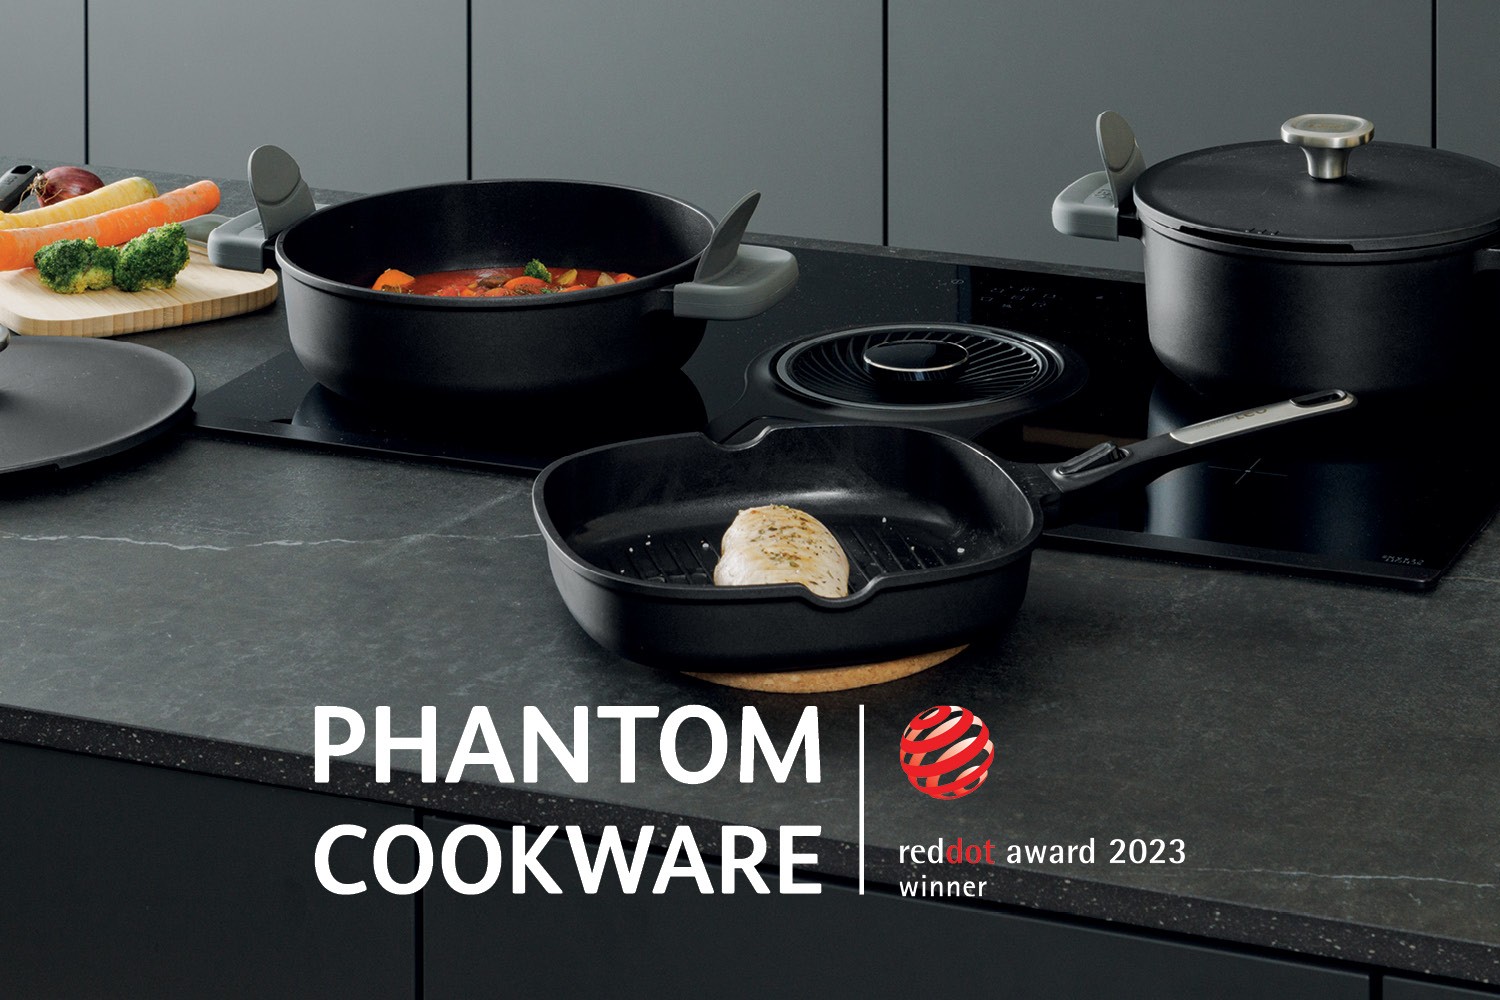 De keuze is aan jou met Red Dot Award 2023 winnaar: Leo Phantom cookware